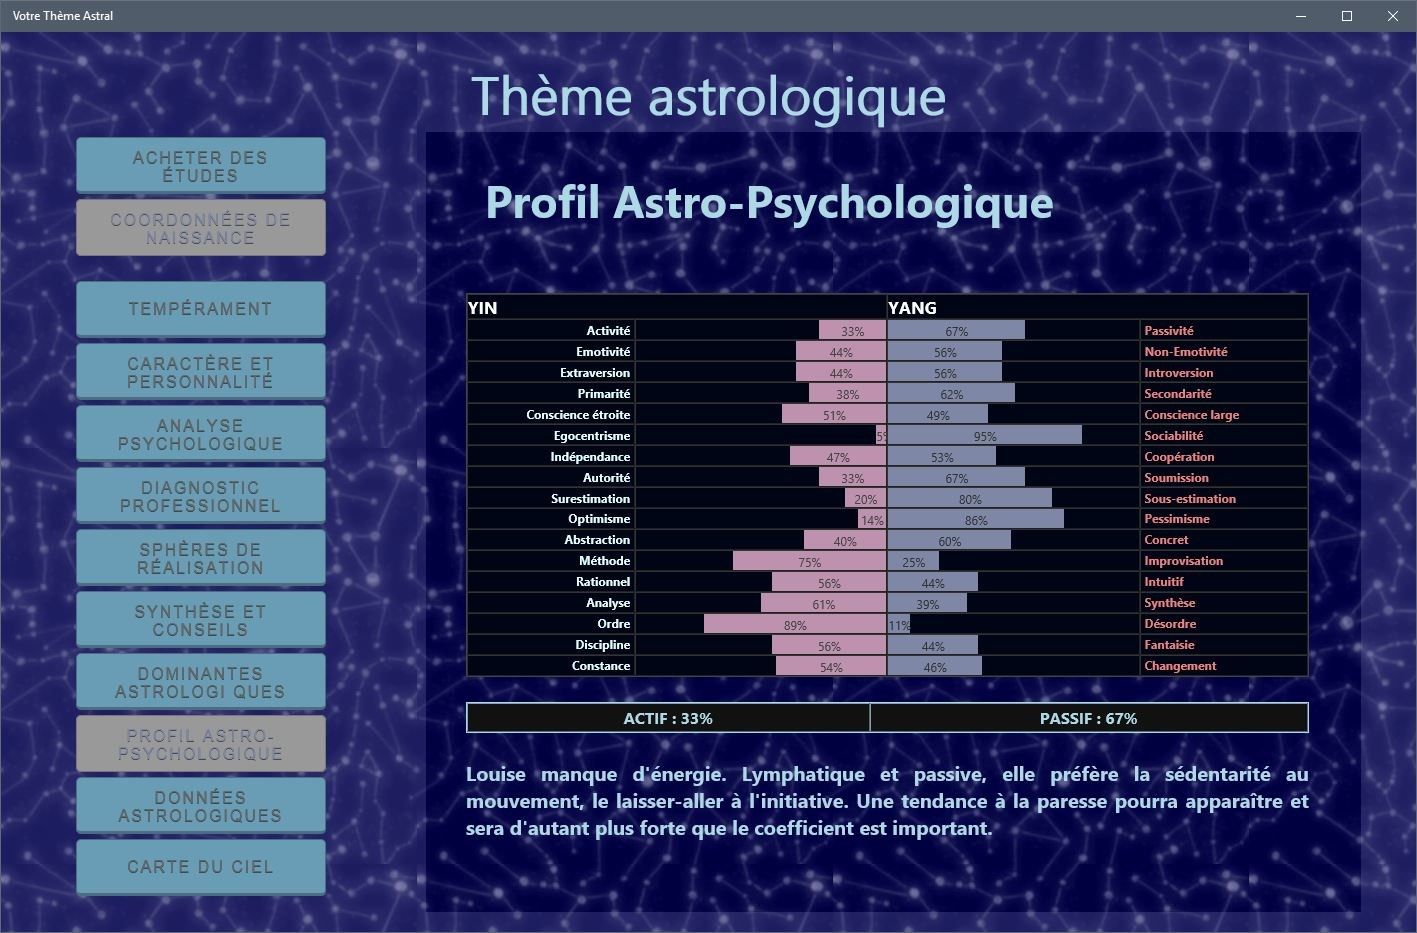 Le profil astro-psychologique